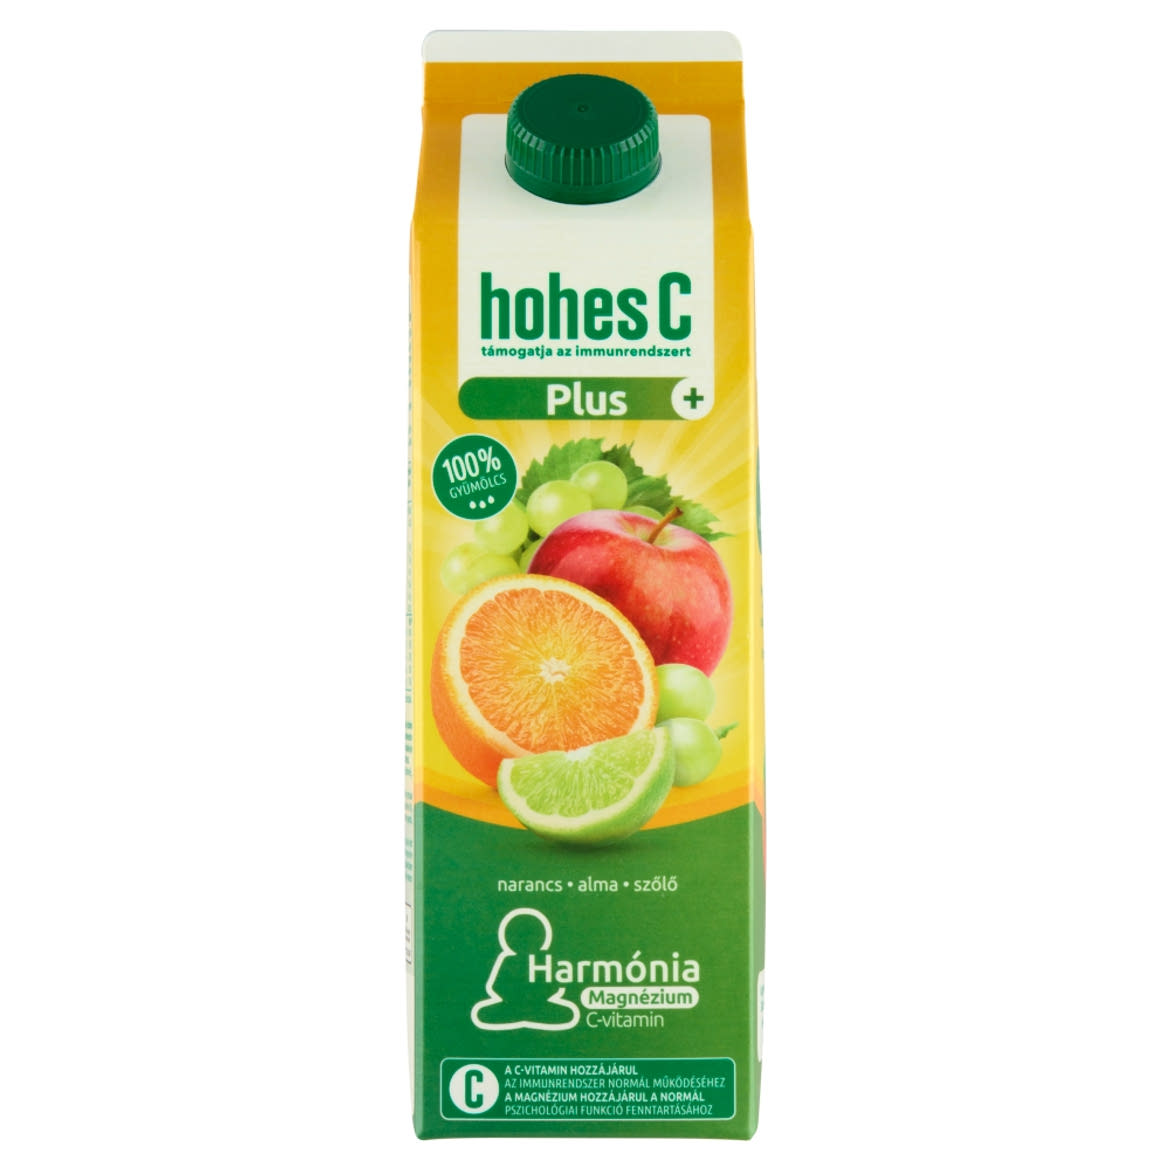 Hohes C Plus+ Magnézium 100% narancs-alma-szőlő-lime vegyes gyümölcslé